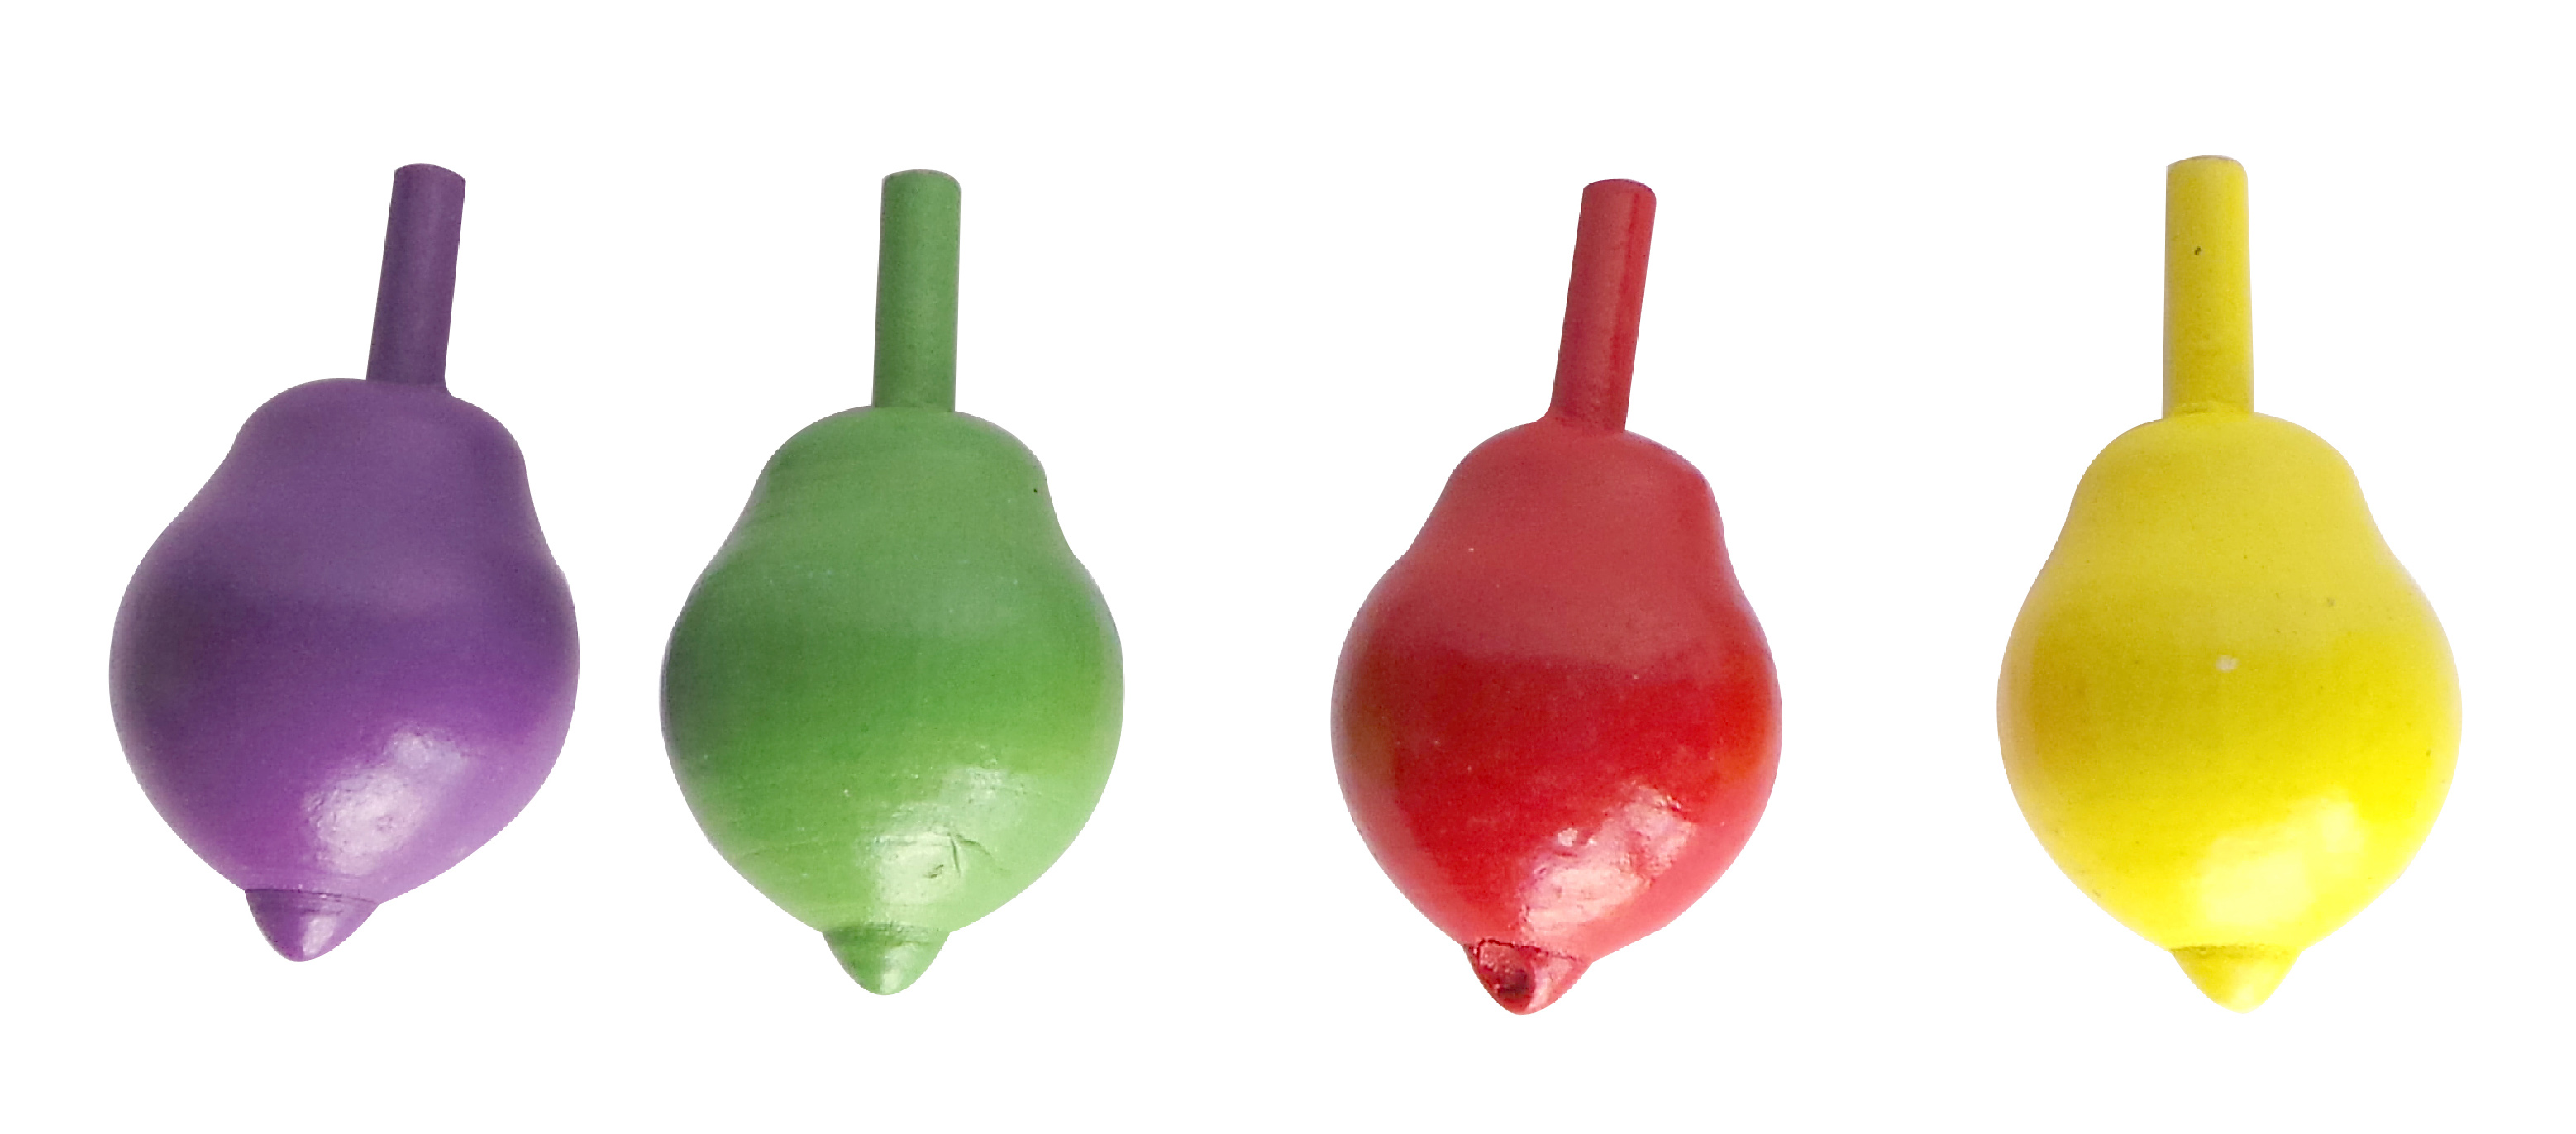 Фруктовый см. Волчок фрукты. Волчок 5.5. Пластиковая игрушка волчок зеленая цвета логопедический для детей.